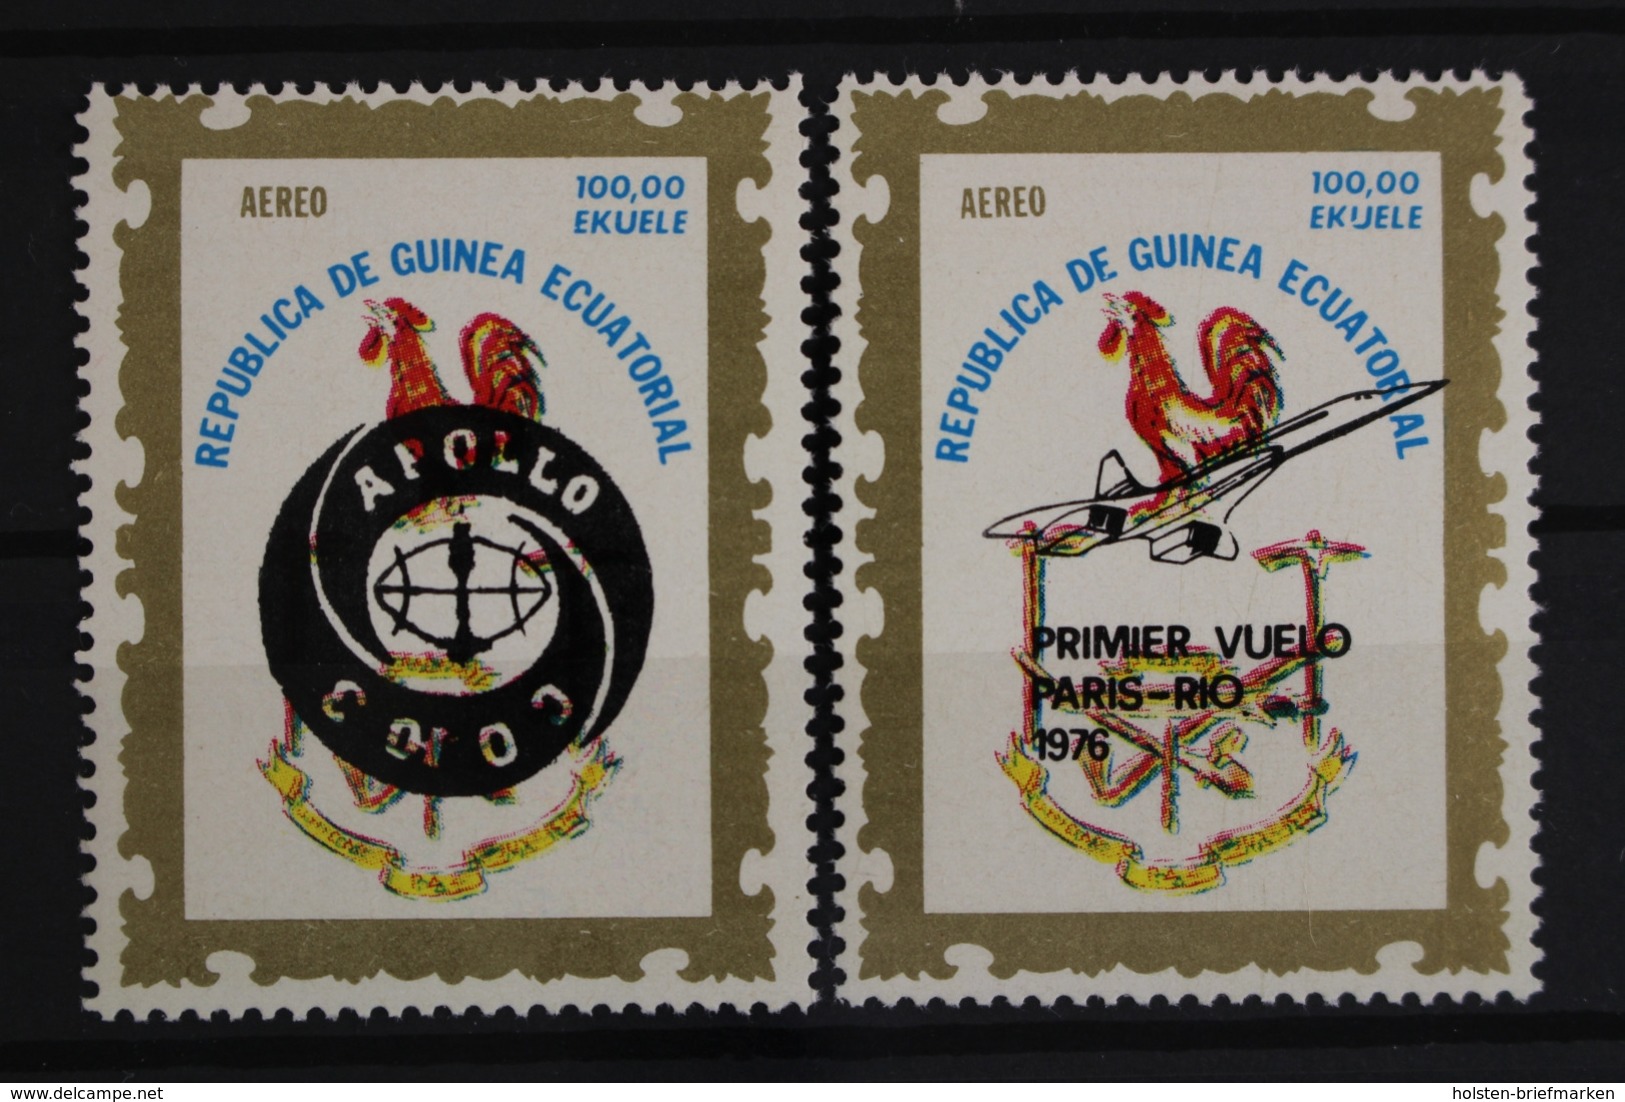 Äquatorialguinea, MiNr. 837-838 I, Postfrisch / MNH - Equatorial Guinea